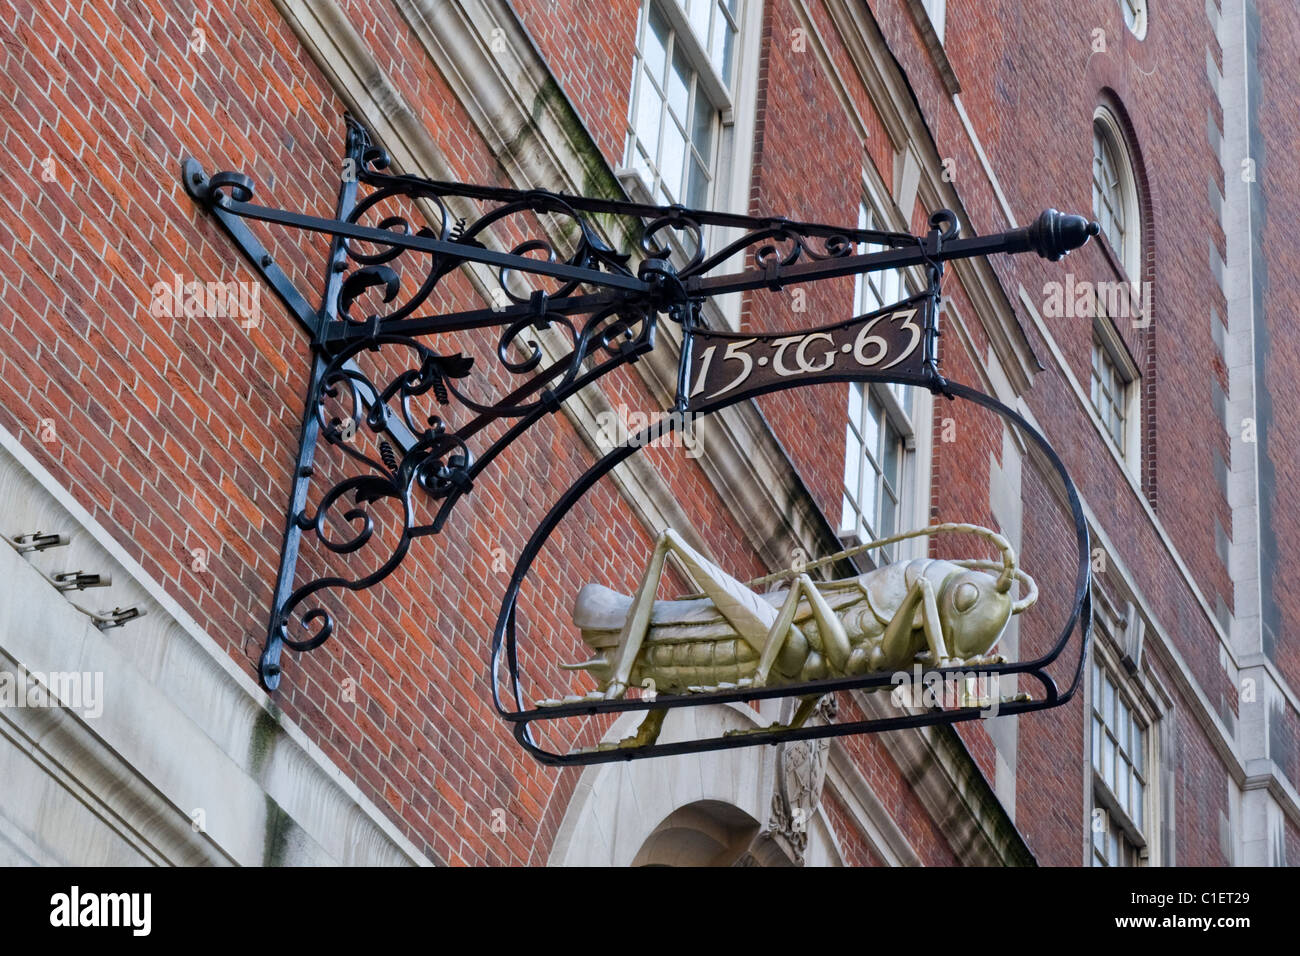 City of London, Lombard Street, Familienwappen von Sir Thomas Gresham gekennzeichnet TG 1563, Gründer von The Royal Exchange, Finanzier Stockfoto